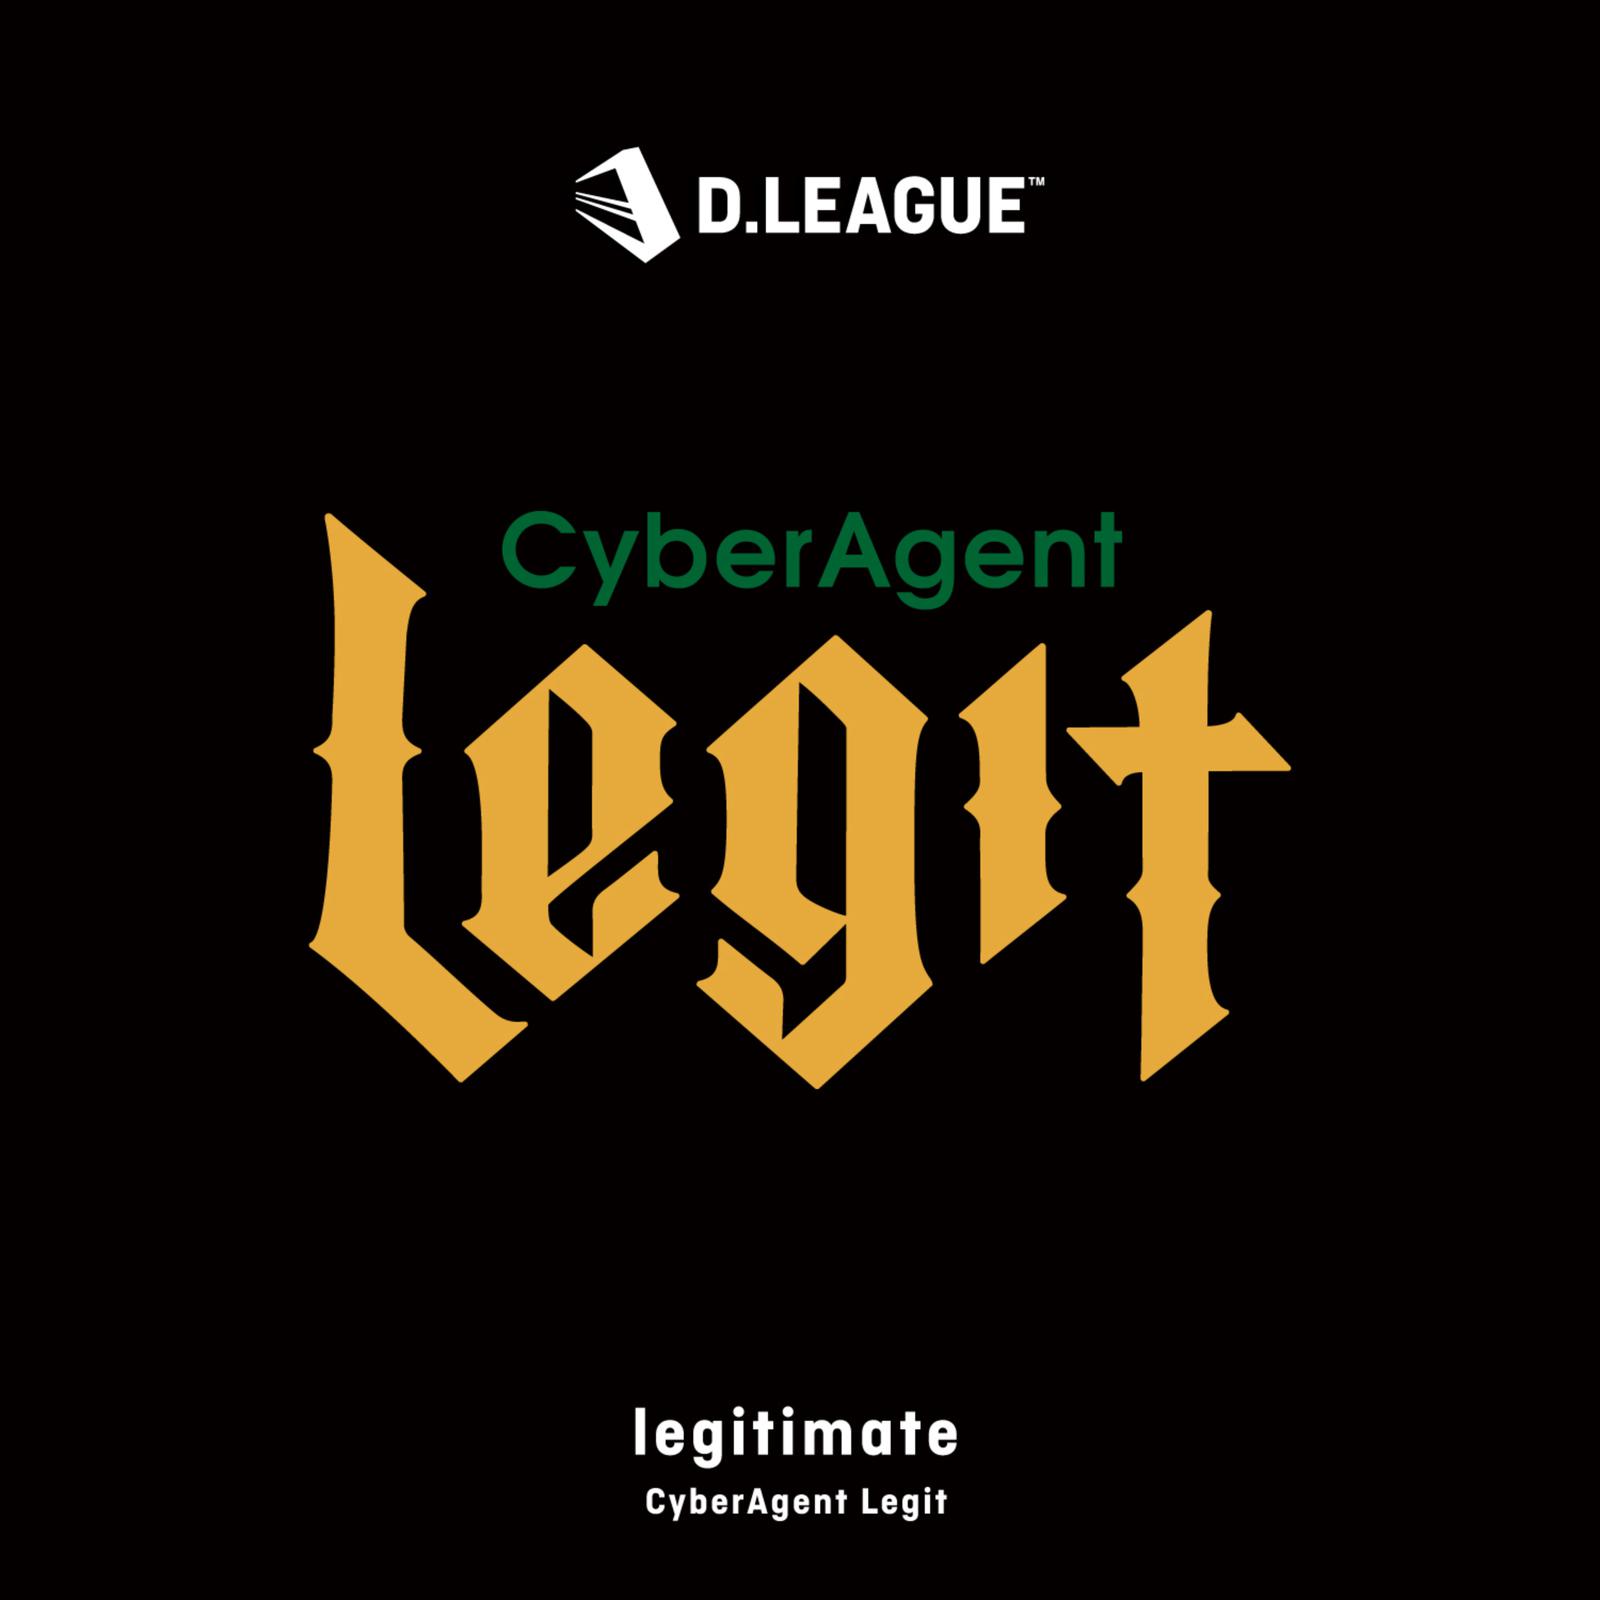 CyberAgent Legit - legitimate